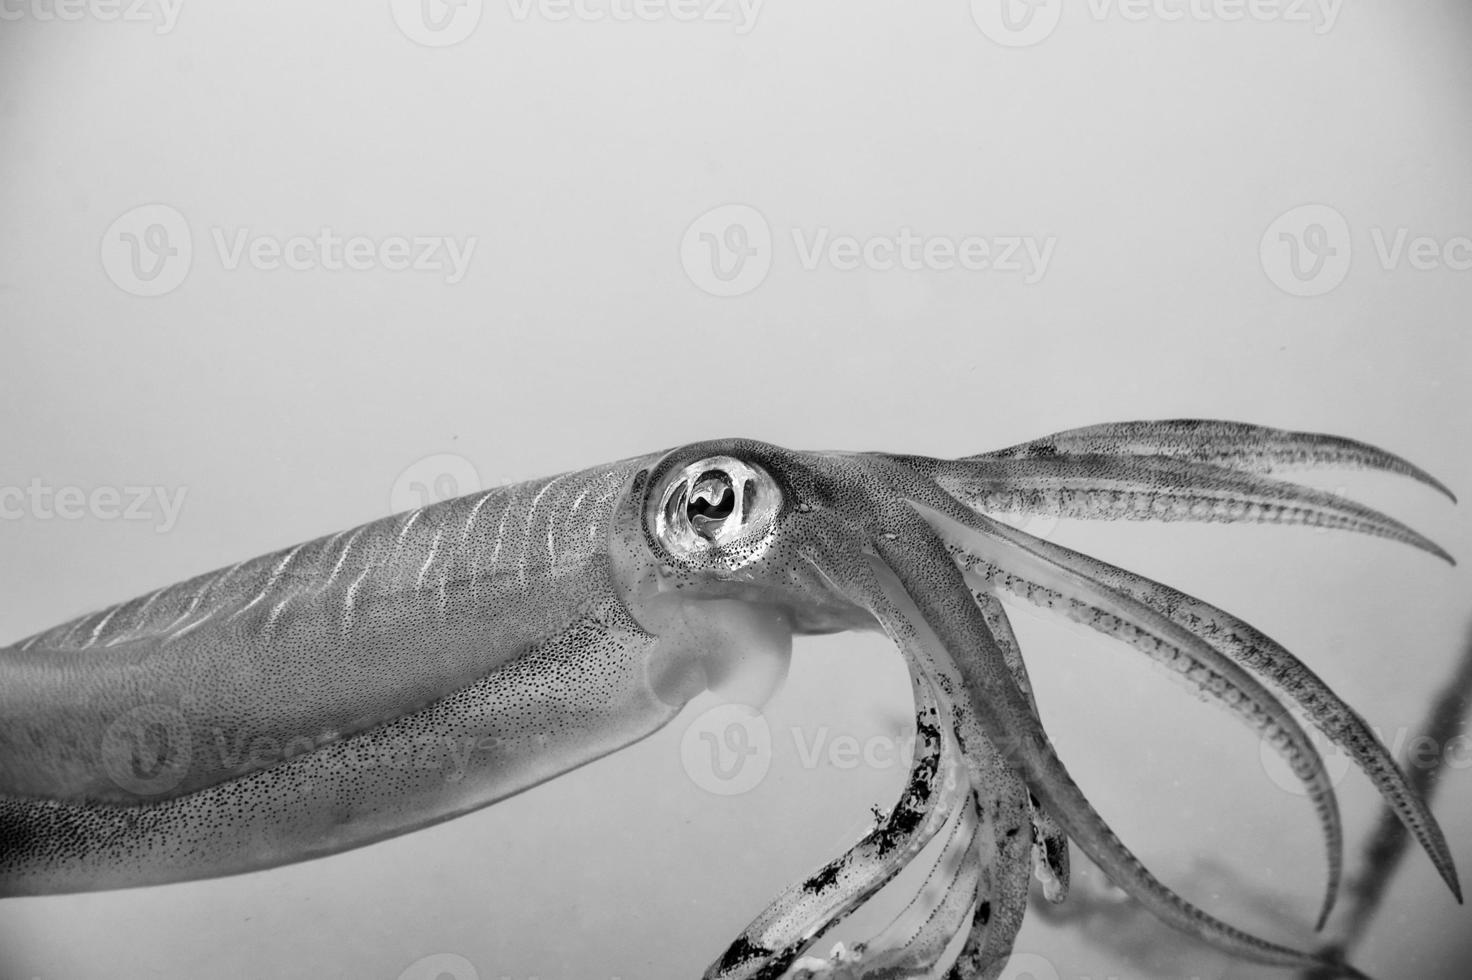 calamar seiche regards comme 20.000 ligues en dessous de le mer photo